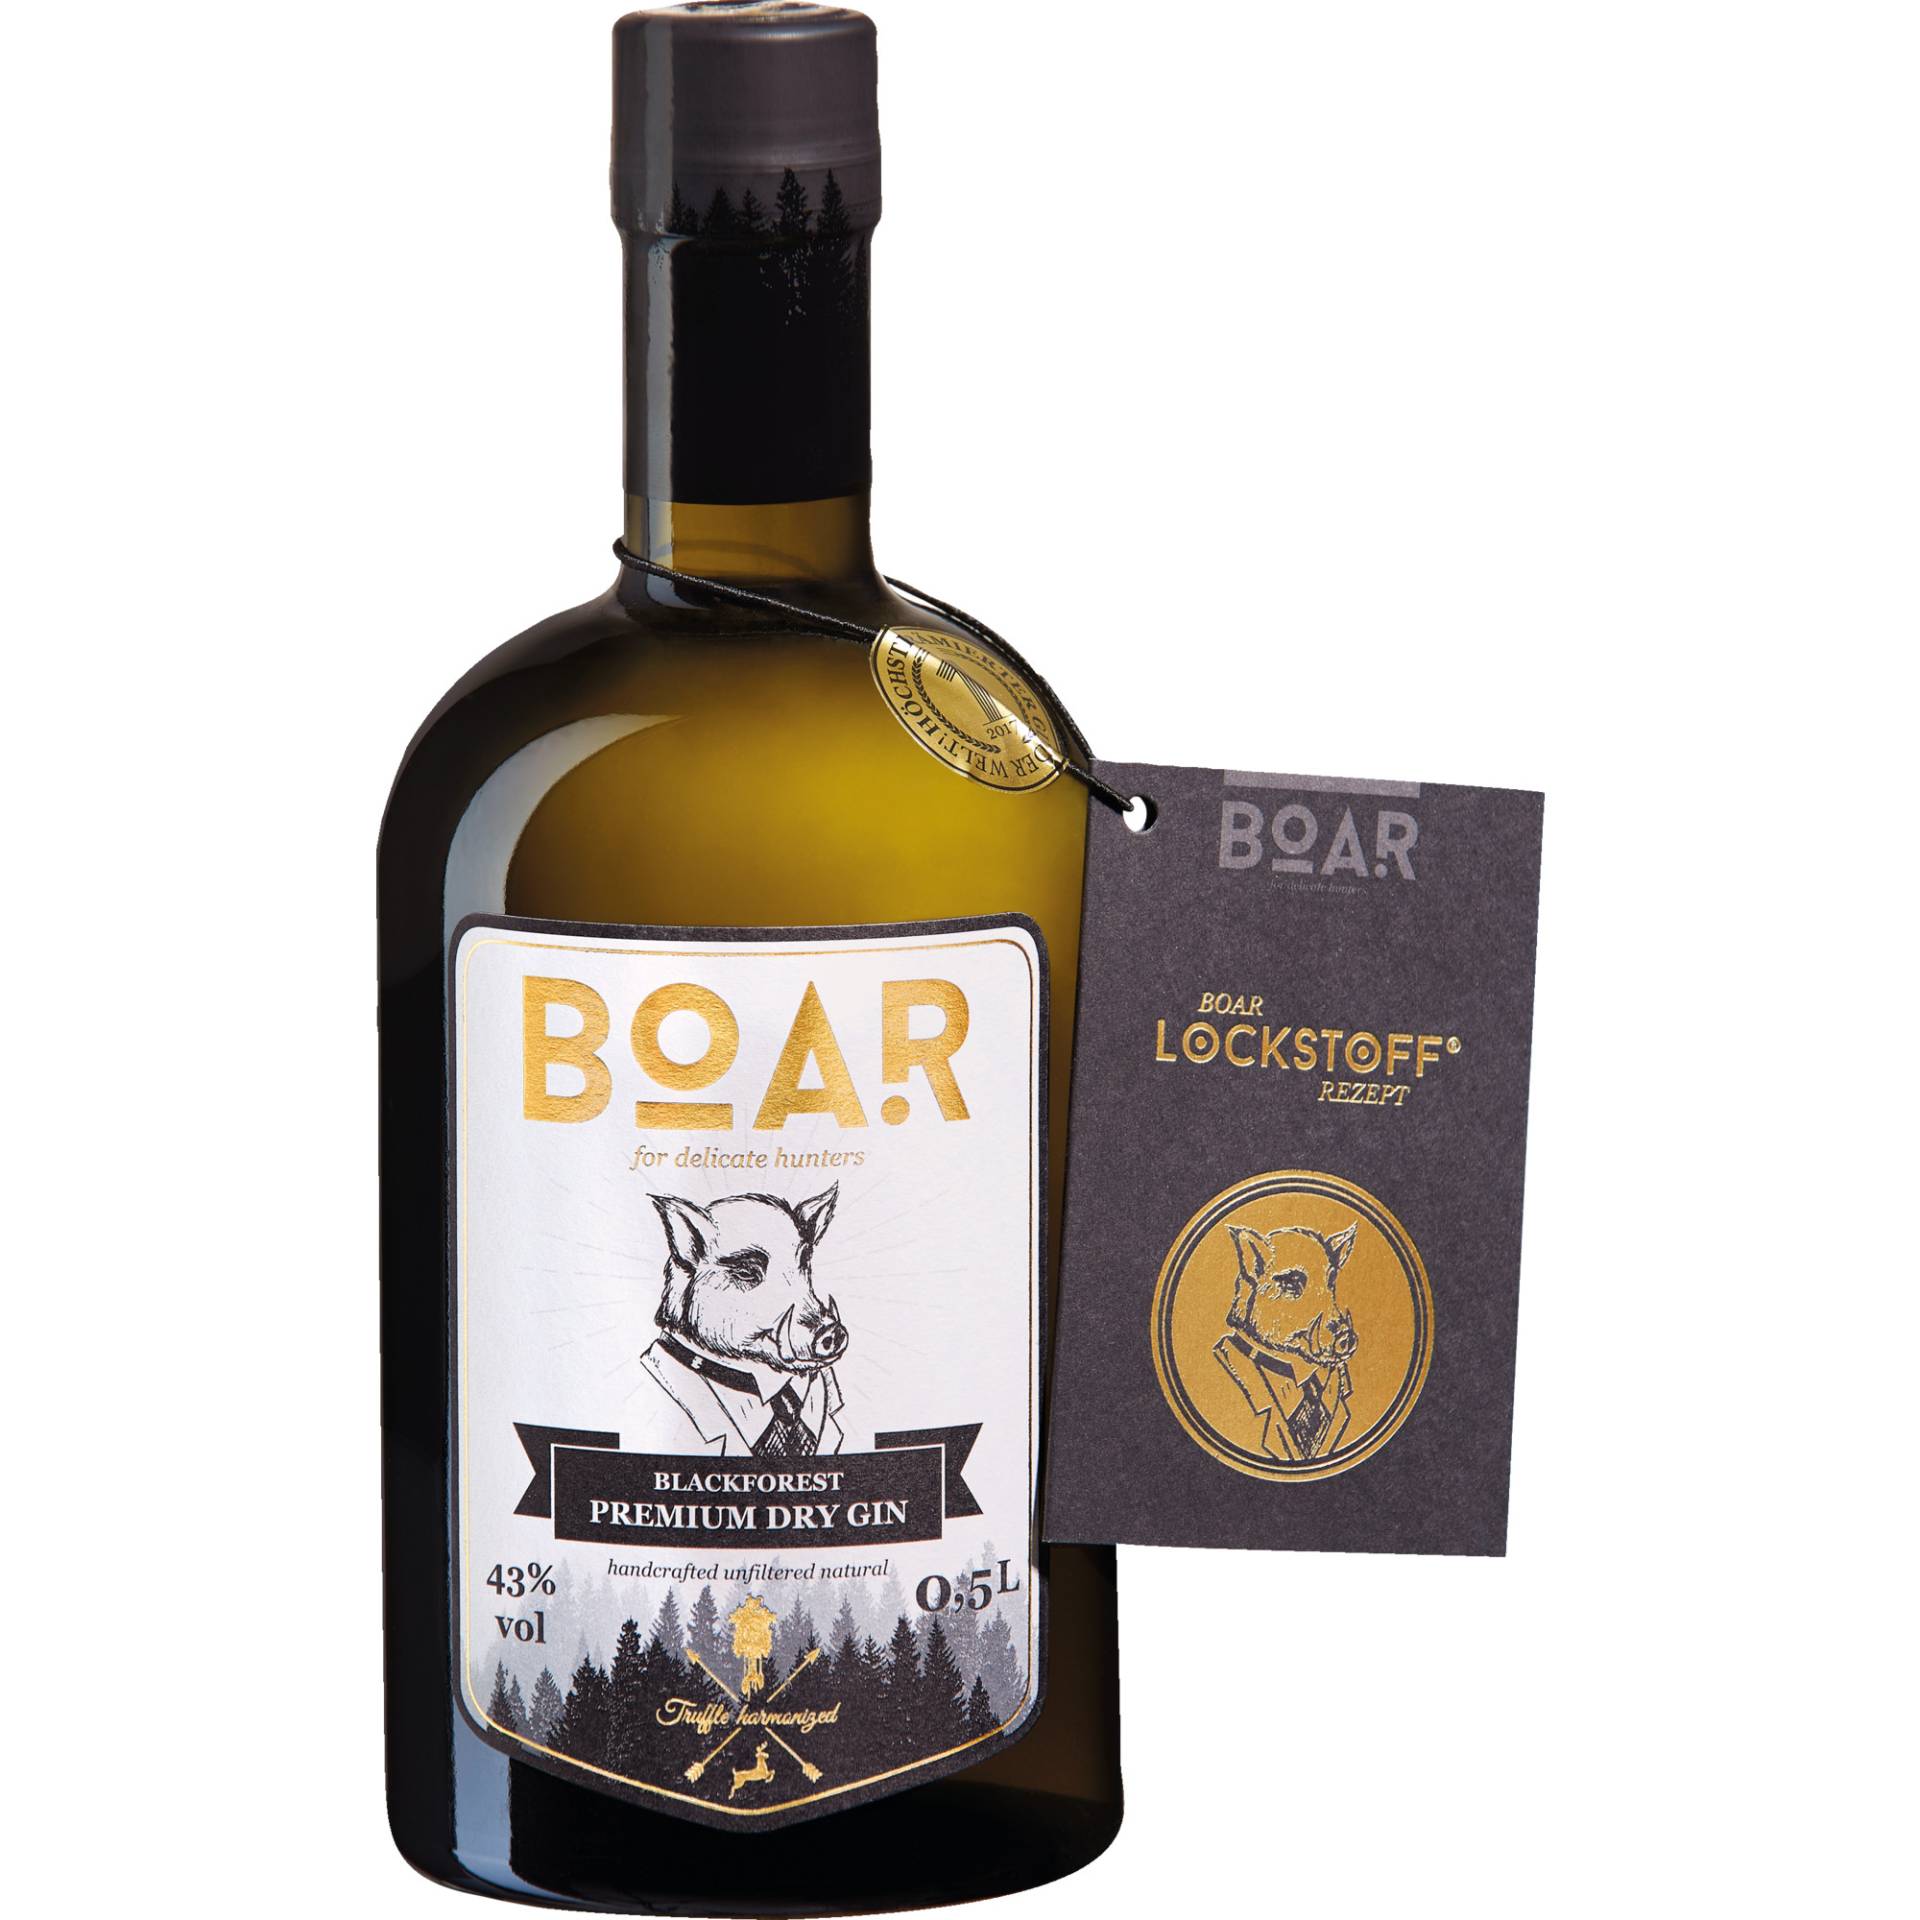 Boar Black Forest Dry Gin, 43 % vol. 0,5 L, Spirituosen von Black Forest Distillery, Breitsodstrasse 4, D - 77740 Bad Peterstal - Griesbach